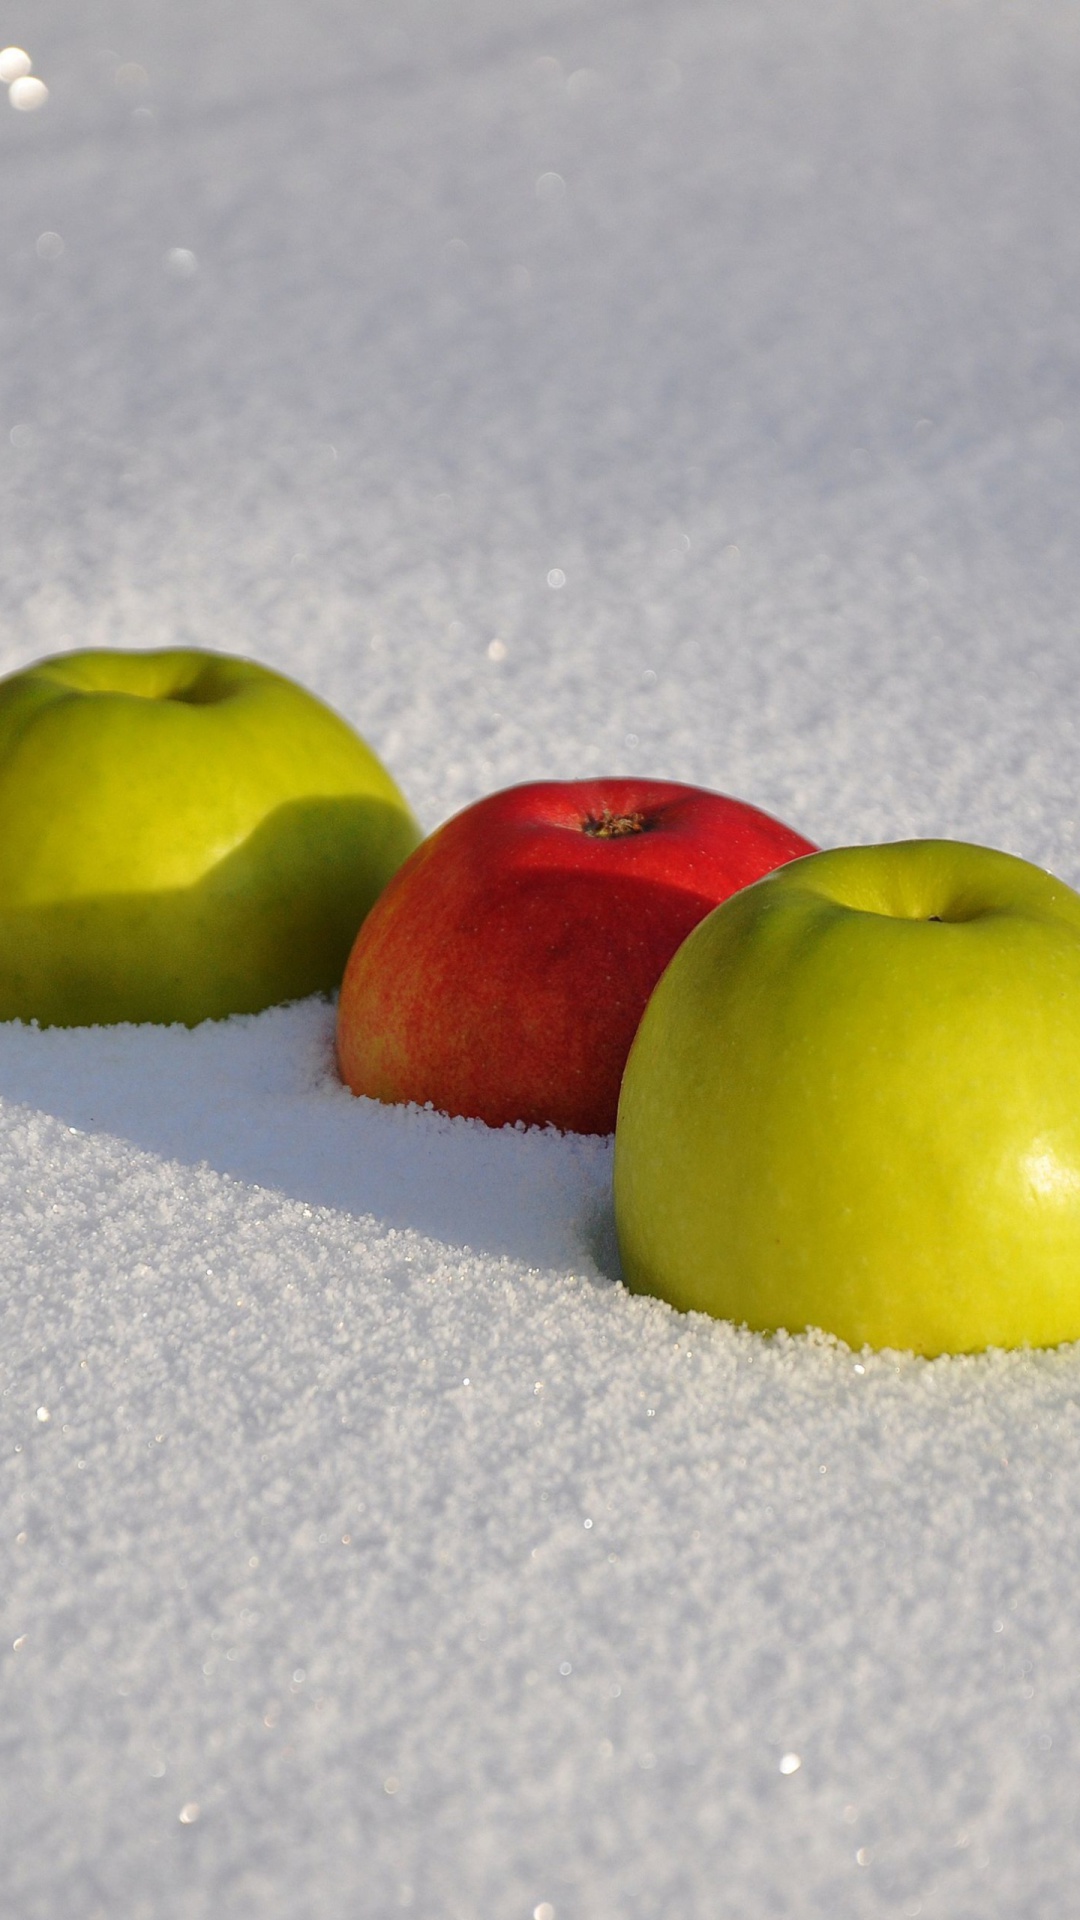 Обои Apples in Snow 1080x1920